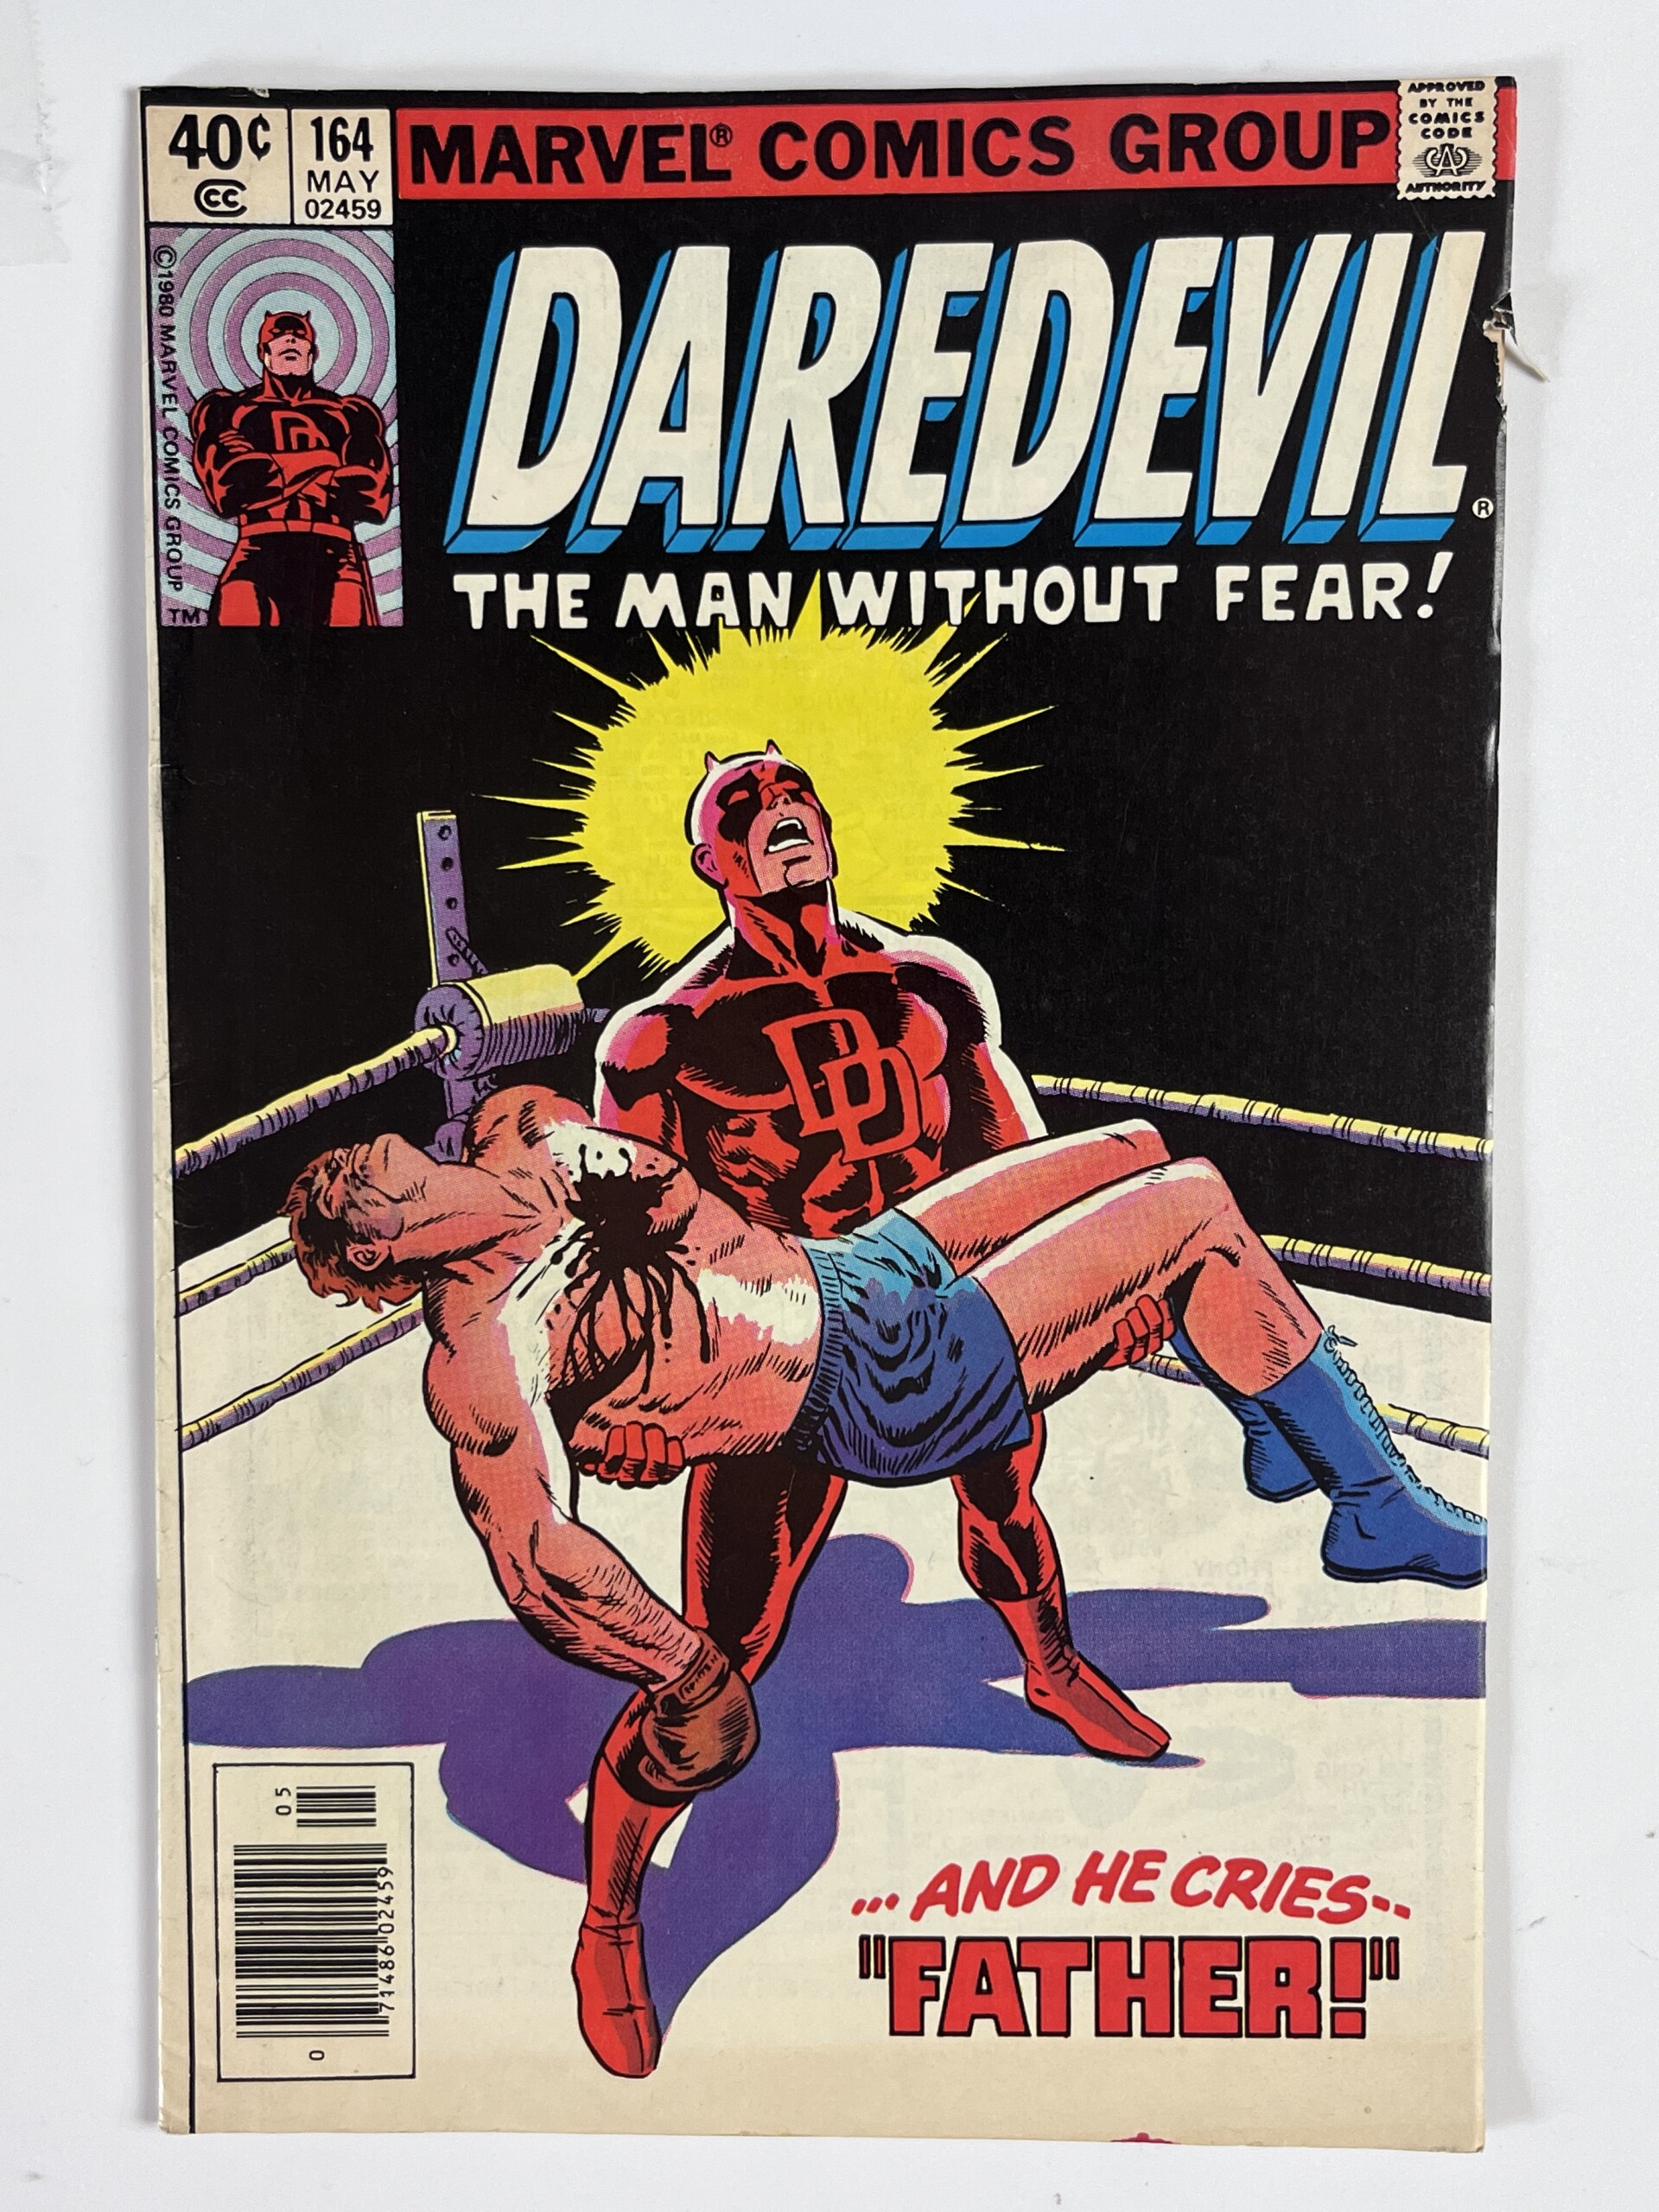 Daredevil #164 (1980) Origin of Daredevil retold in 5.0 Very Good/Fine